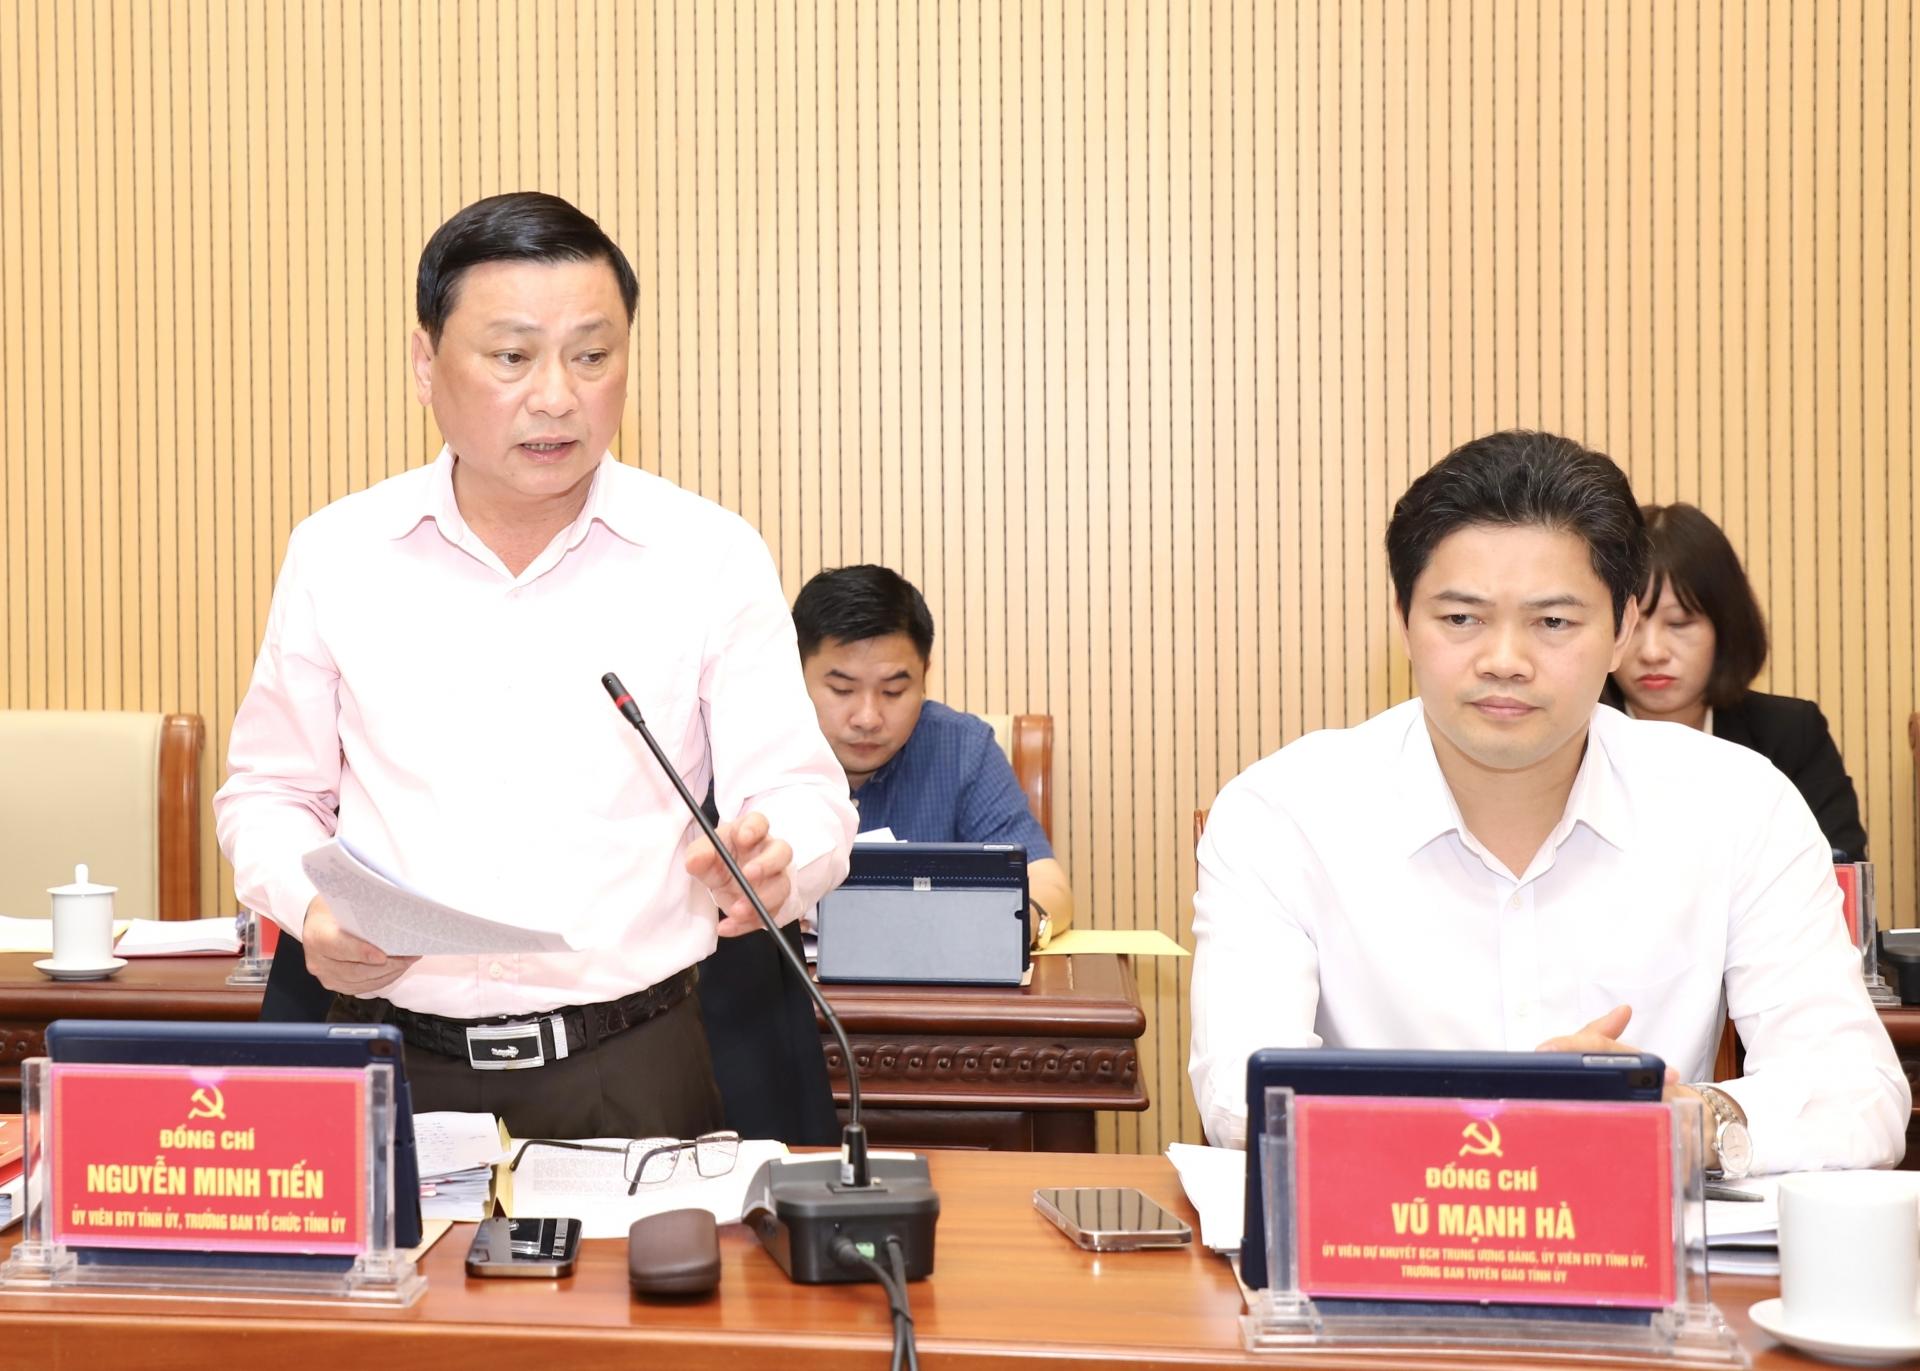 Trưởng ban Tổ chức Tỉnh ủy Nguyễn Minh Tiến đề xuất giải pháp nâng cao chất lượng công vụ